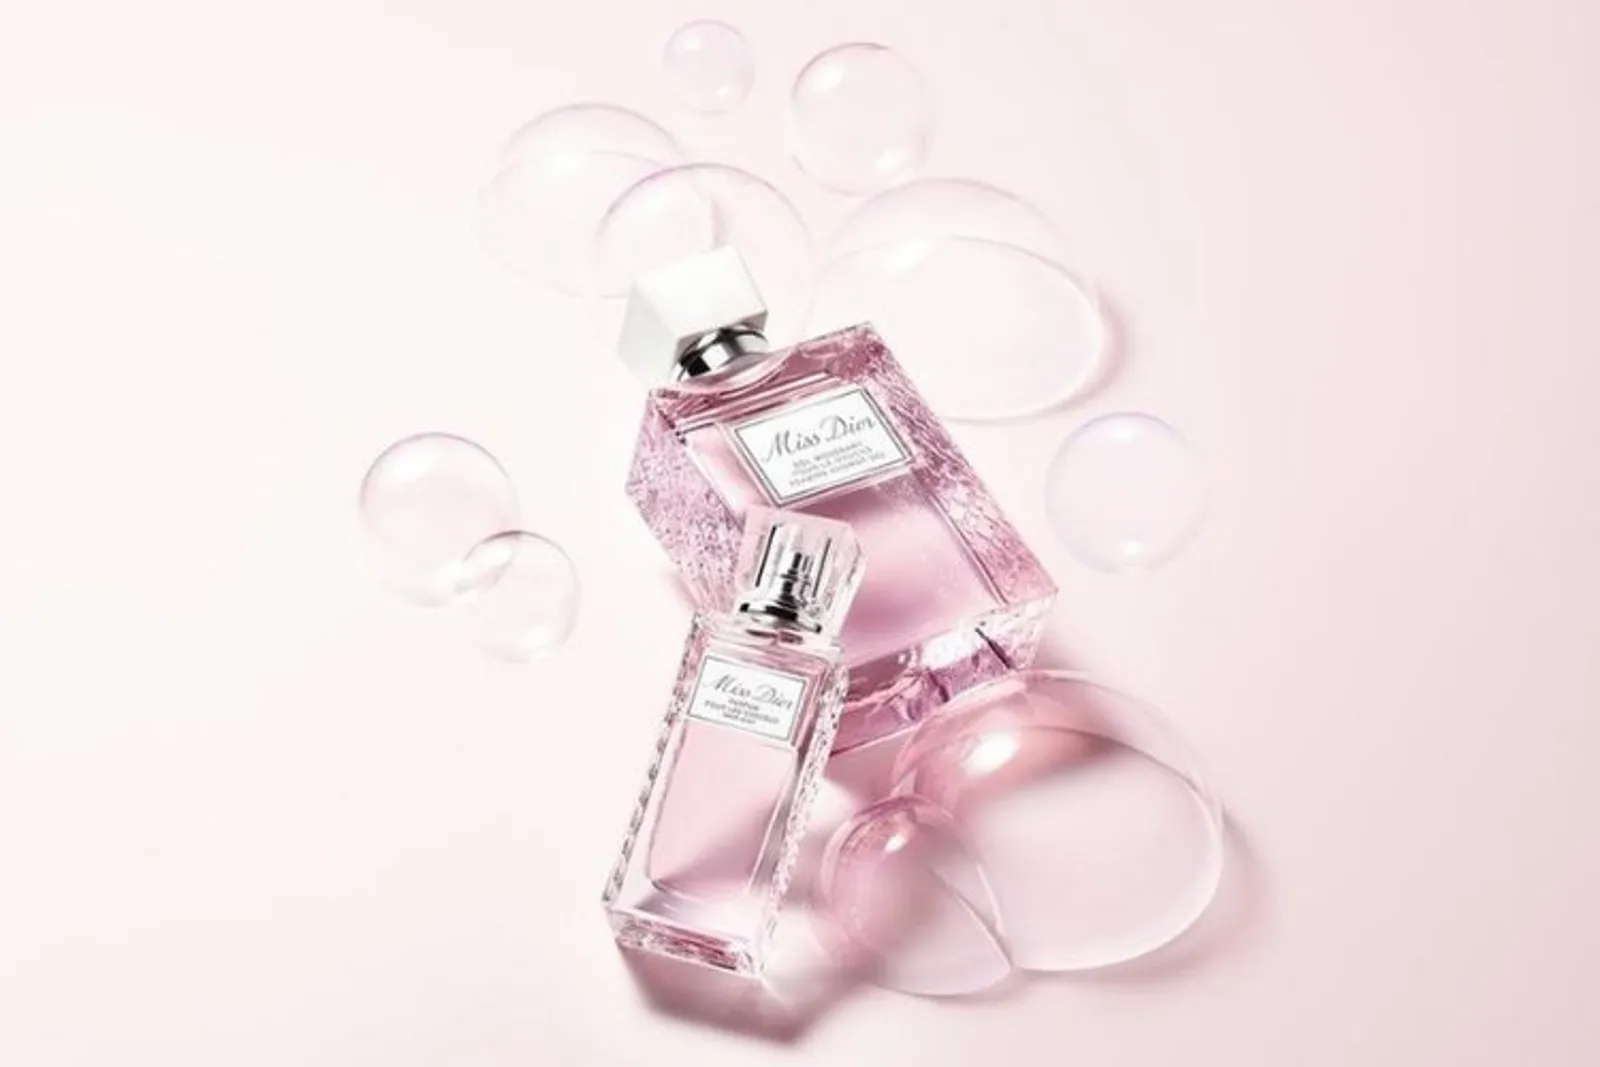 Terinspirasi dari Sebuah Dress Ikonik, Ini Parfum Terbaru dari Dior